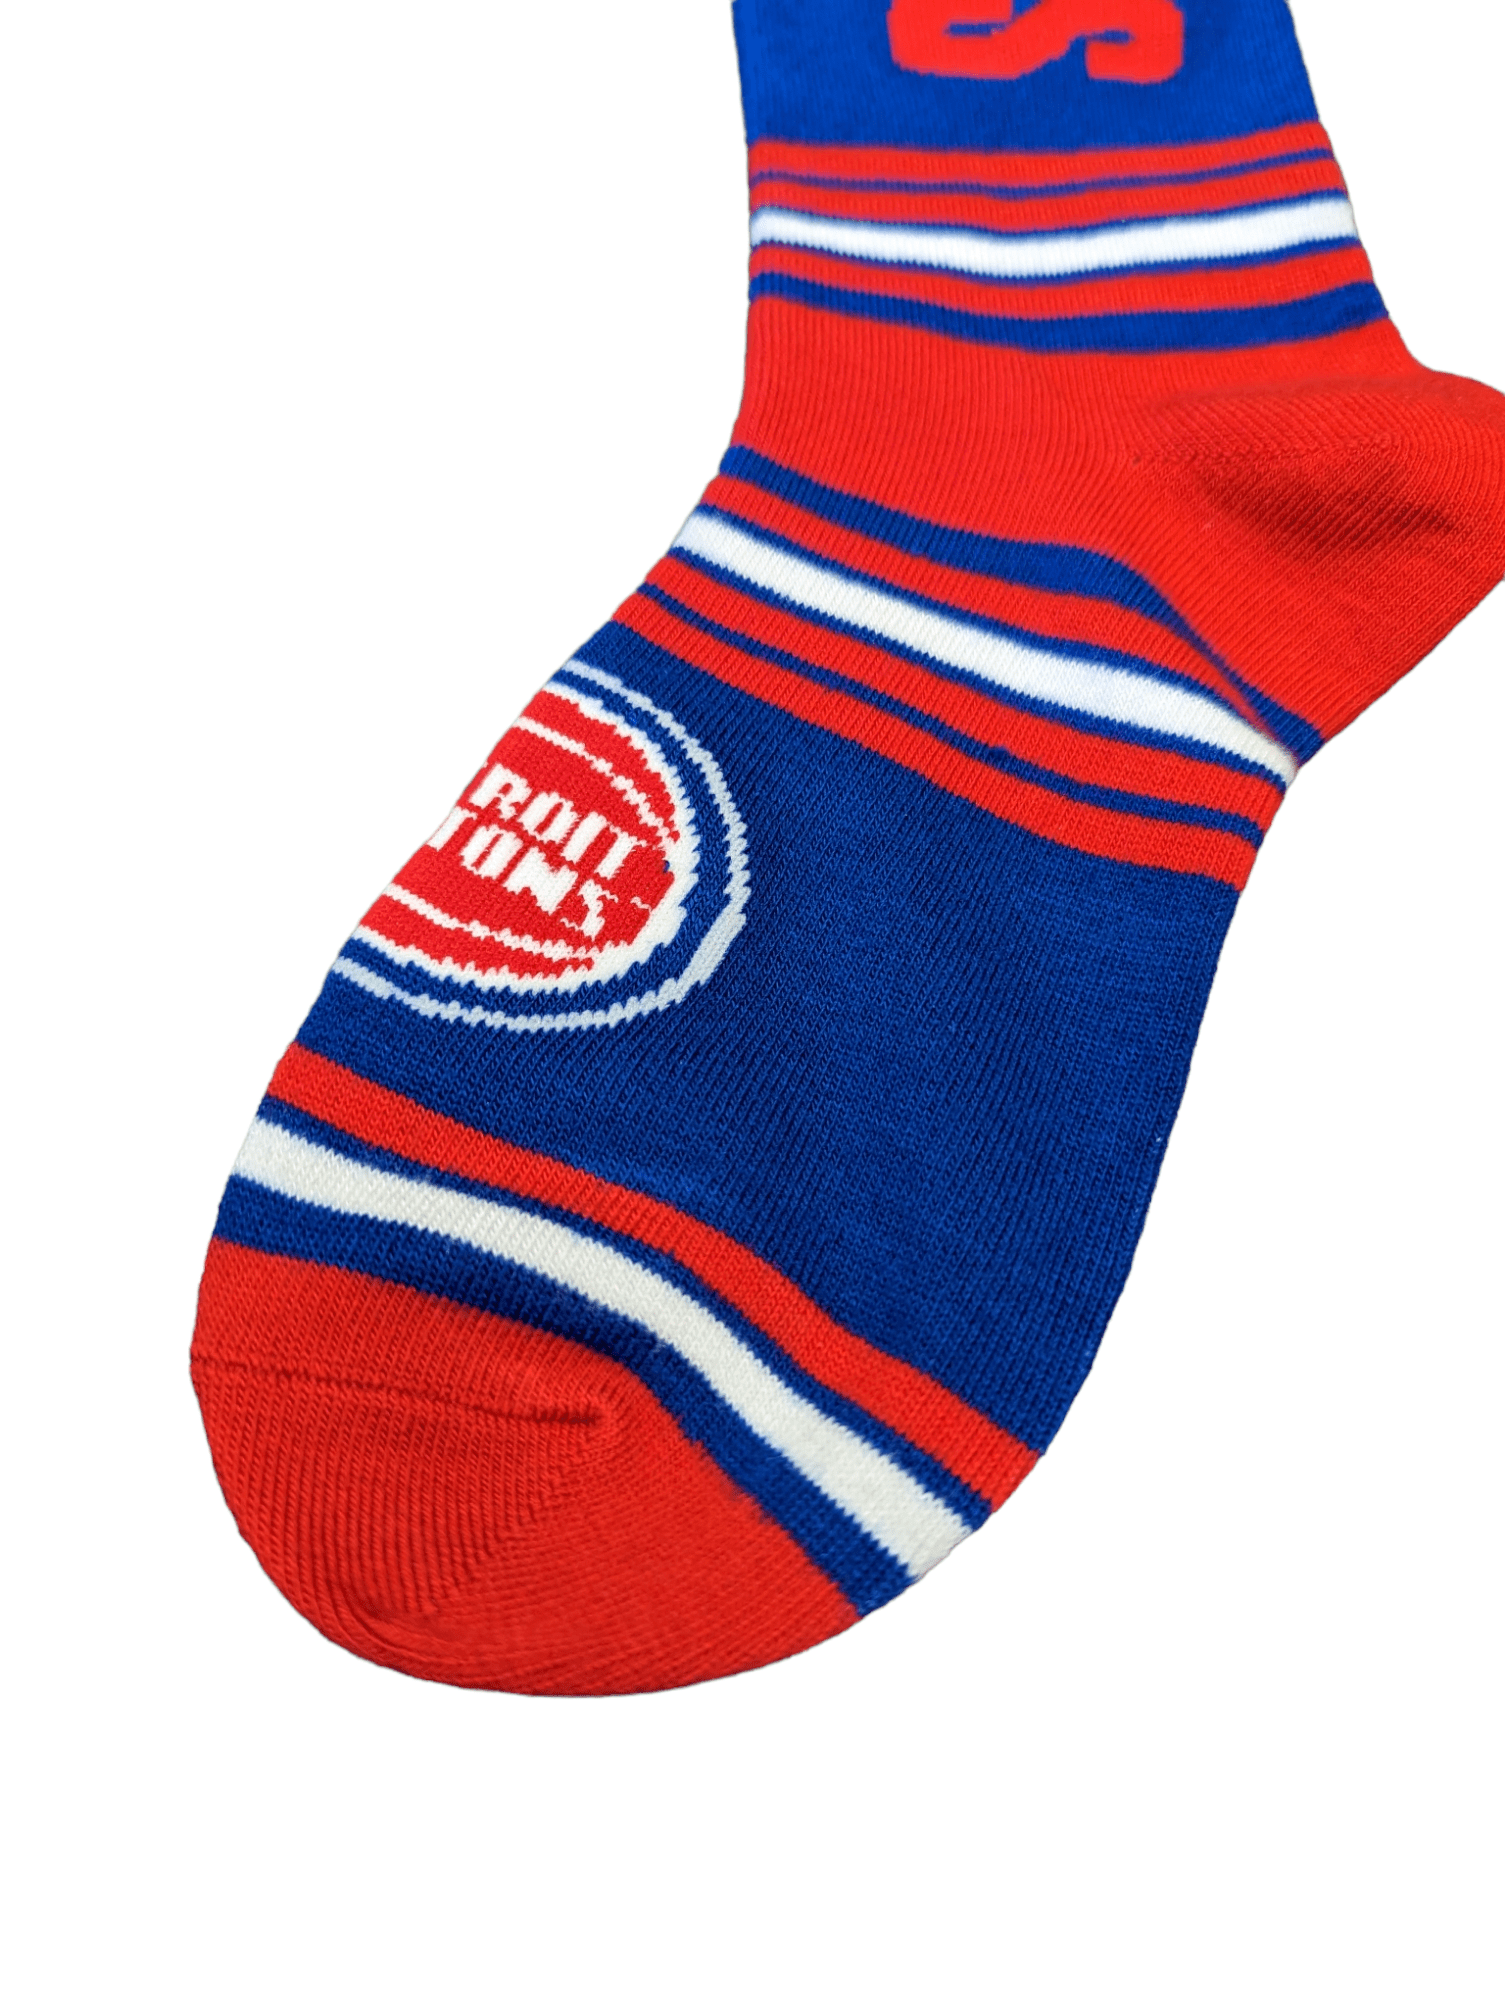 For Bare Feet Socks Detroit Pistons Go Team Socks